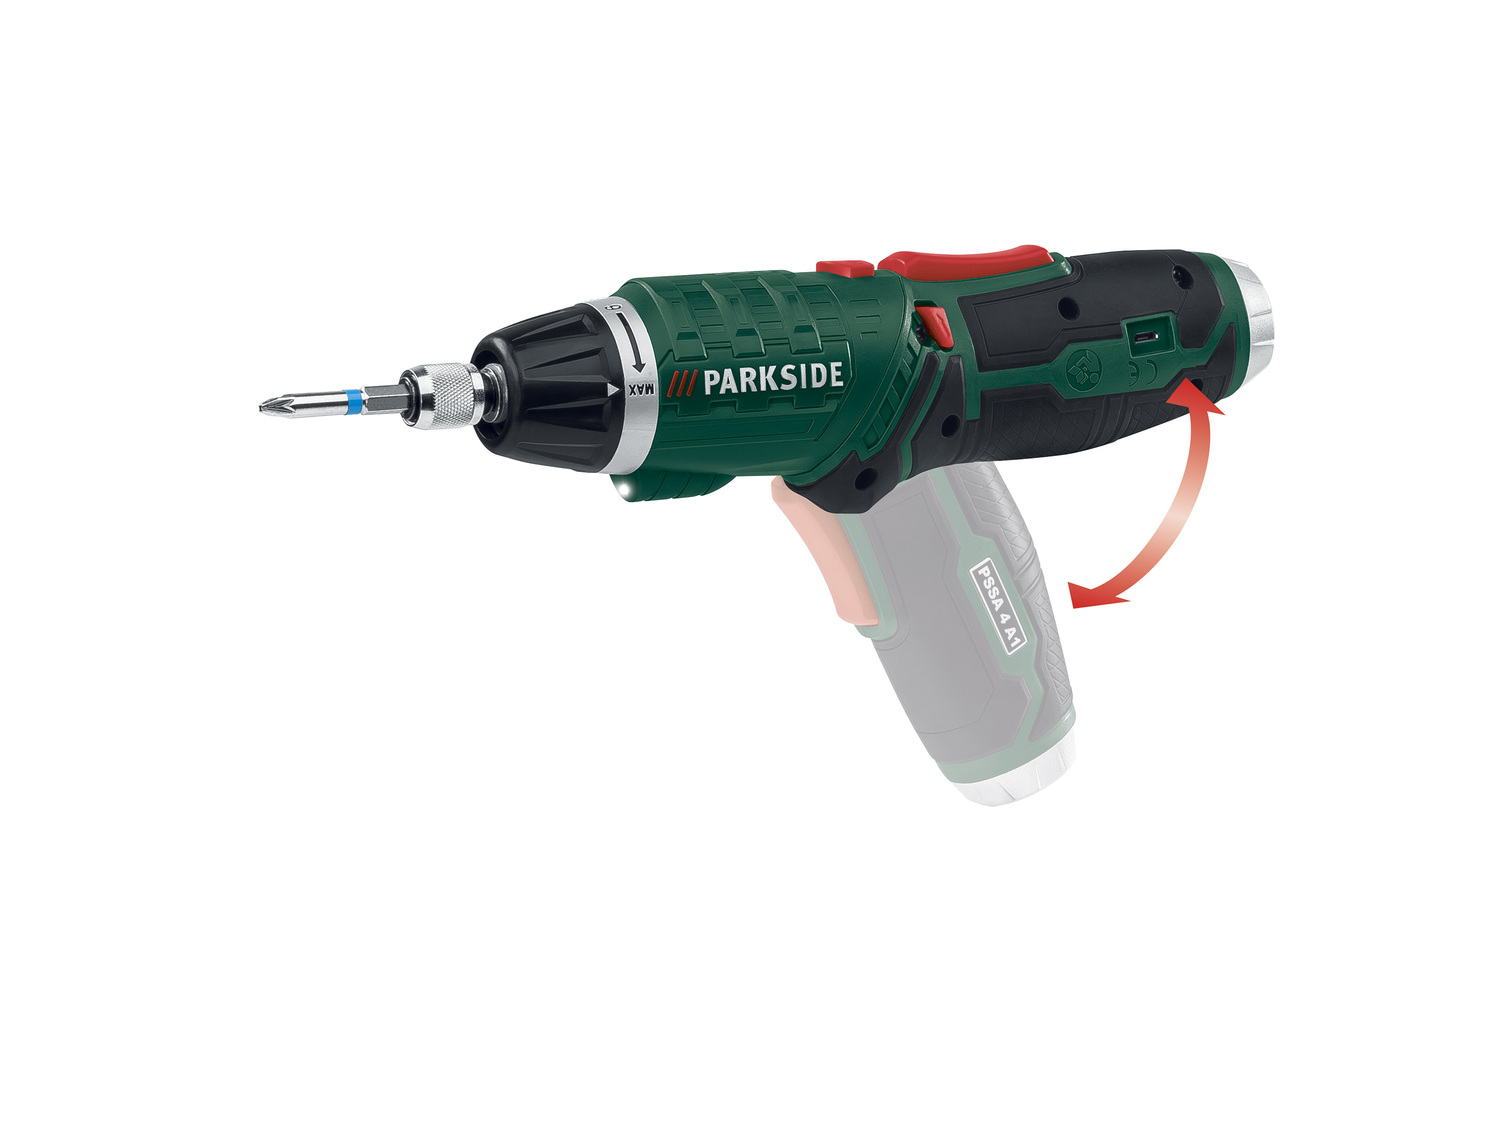 Akumulatorowa wkrętarka z latarką Parkside PSSA 4 A1, cena 59,90 PLN 
- dodatkowe ...